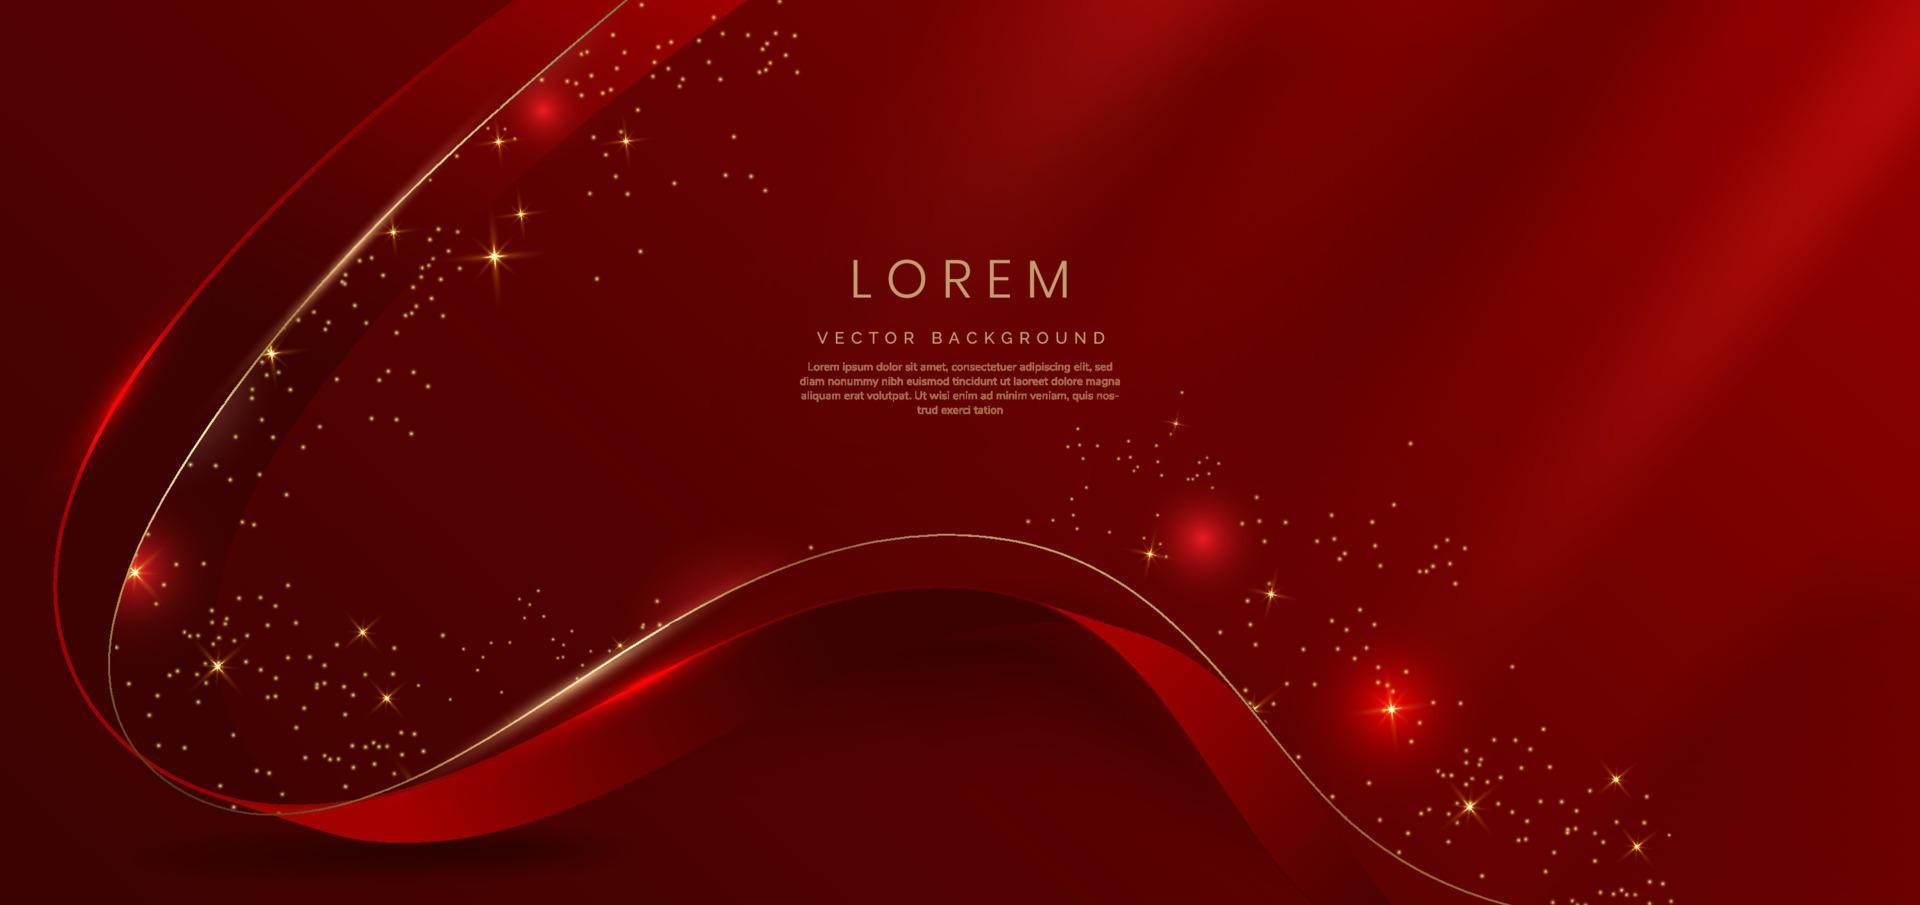 fita vermelha curvada de ouro 3d abstrata em fundo vermelho com efeito de iluminação e brilho com espaço de cópia para texto. estilo de design de luxo. vetor